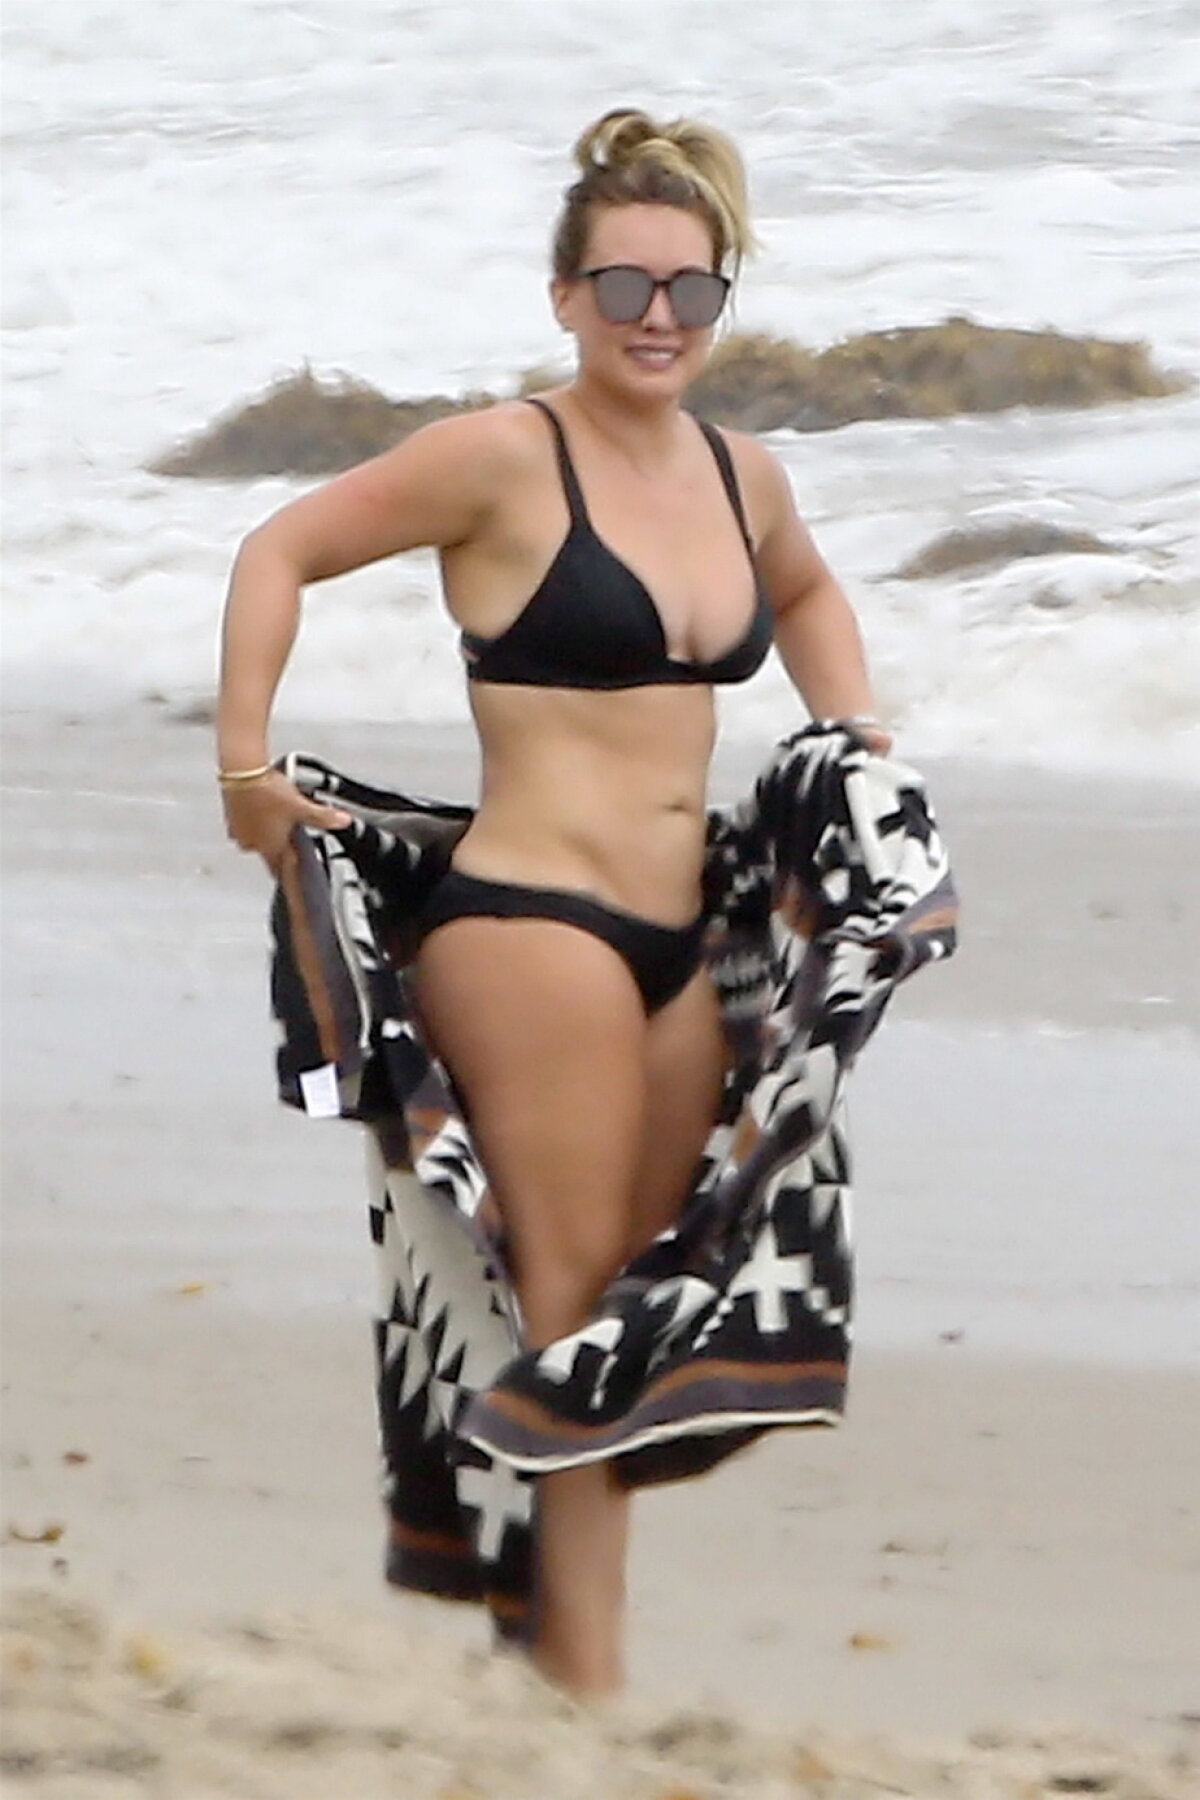 GALERIE FOTO Imagini rare la plajă. Hilary Duff, într-un costum de baie super-sexy